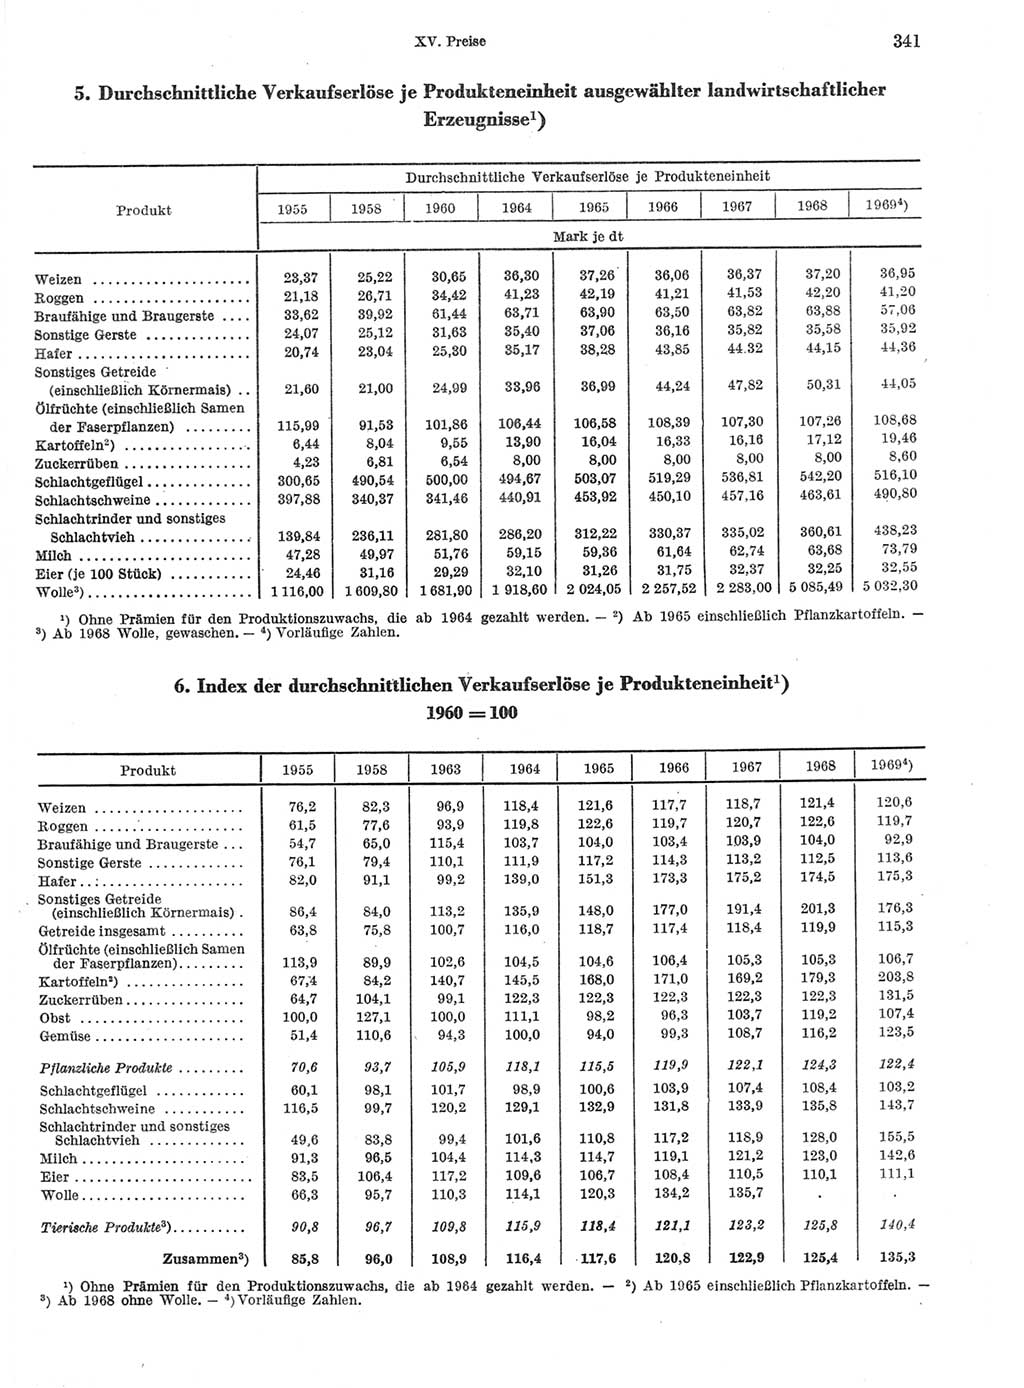 Statistisches Jahrbuch der Deutschen Demokratischen Republik (DDR) 1970, Seite 341 (Stat. Jb. DDR 1970, S. 341)